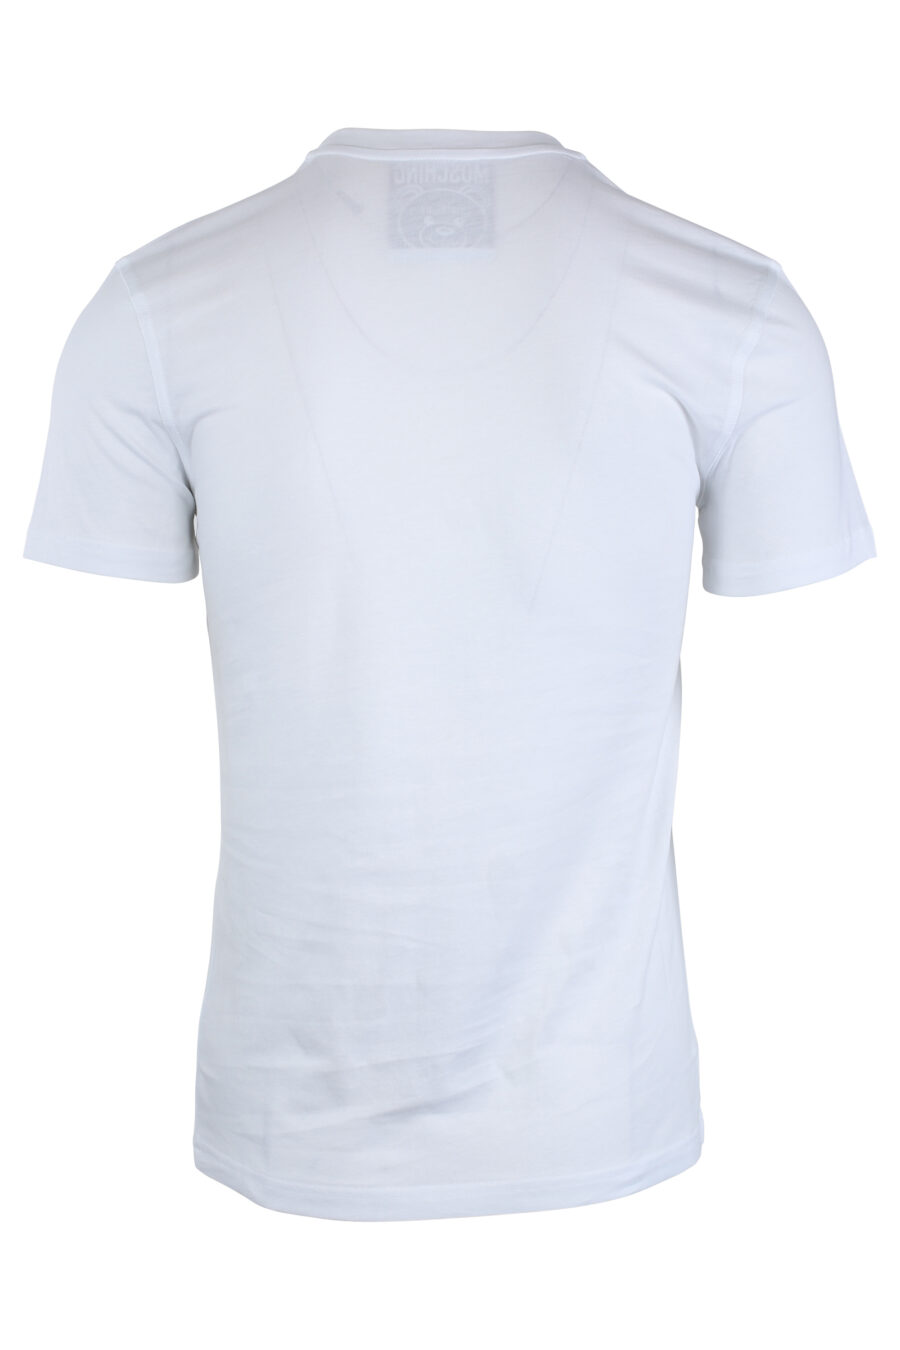 T-shirt branca com maxilogo de urso monocromático - IMG 1654